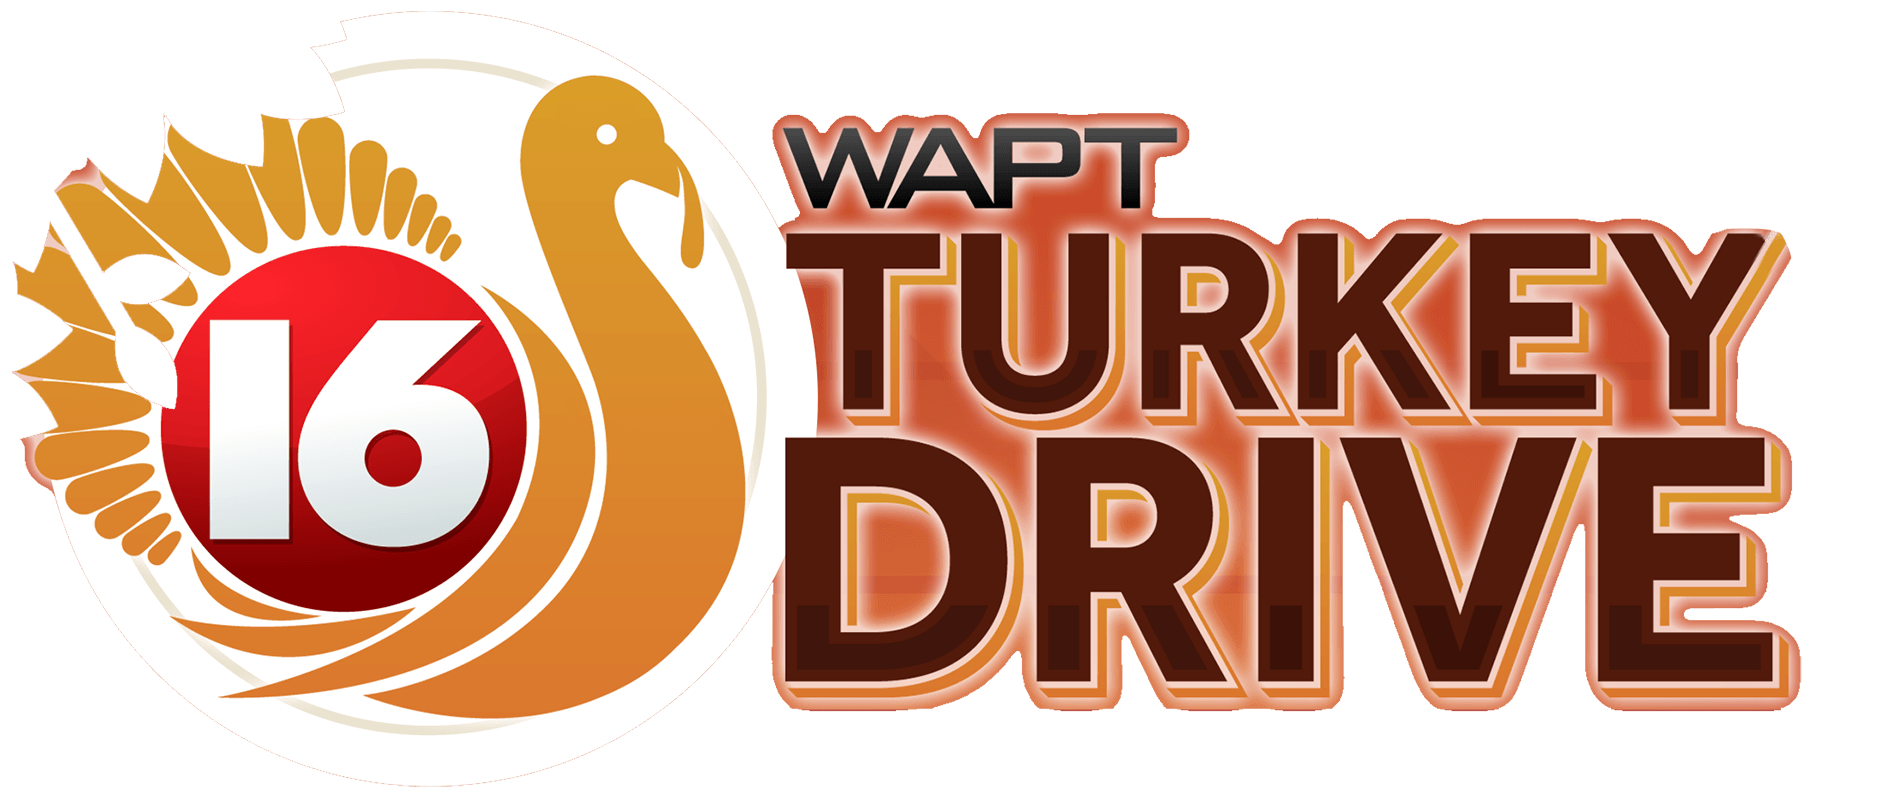 WAPT Turkey Drive Logo